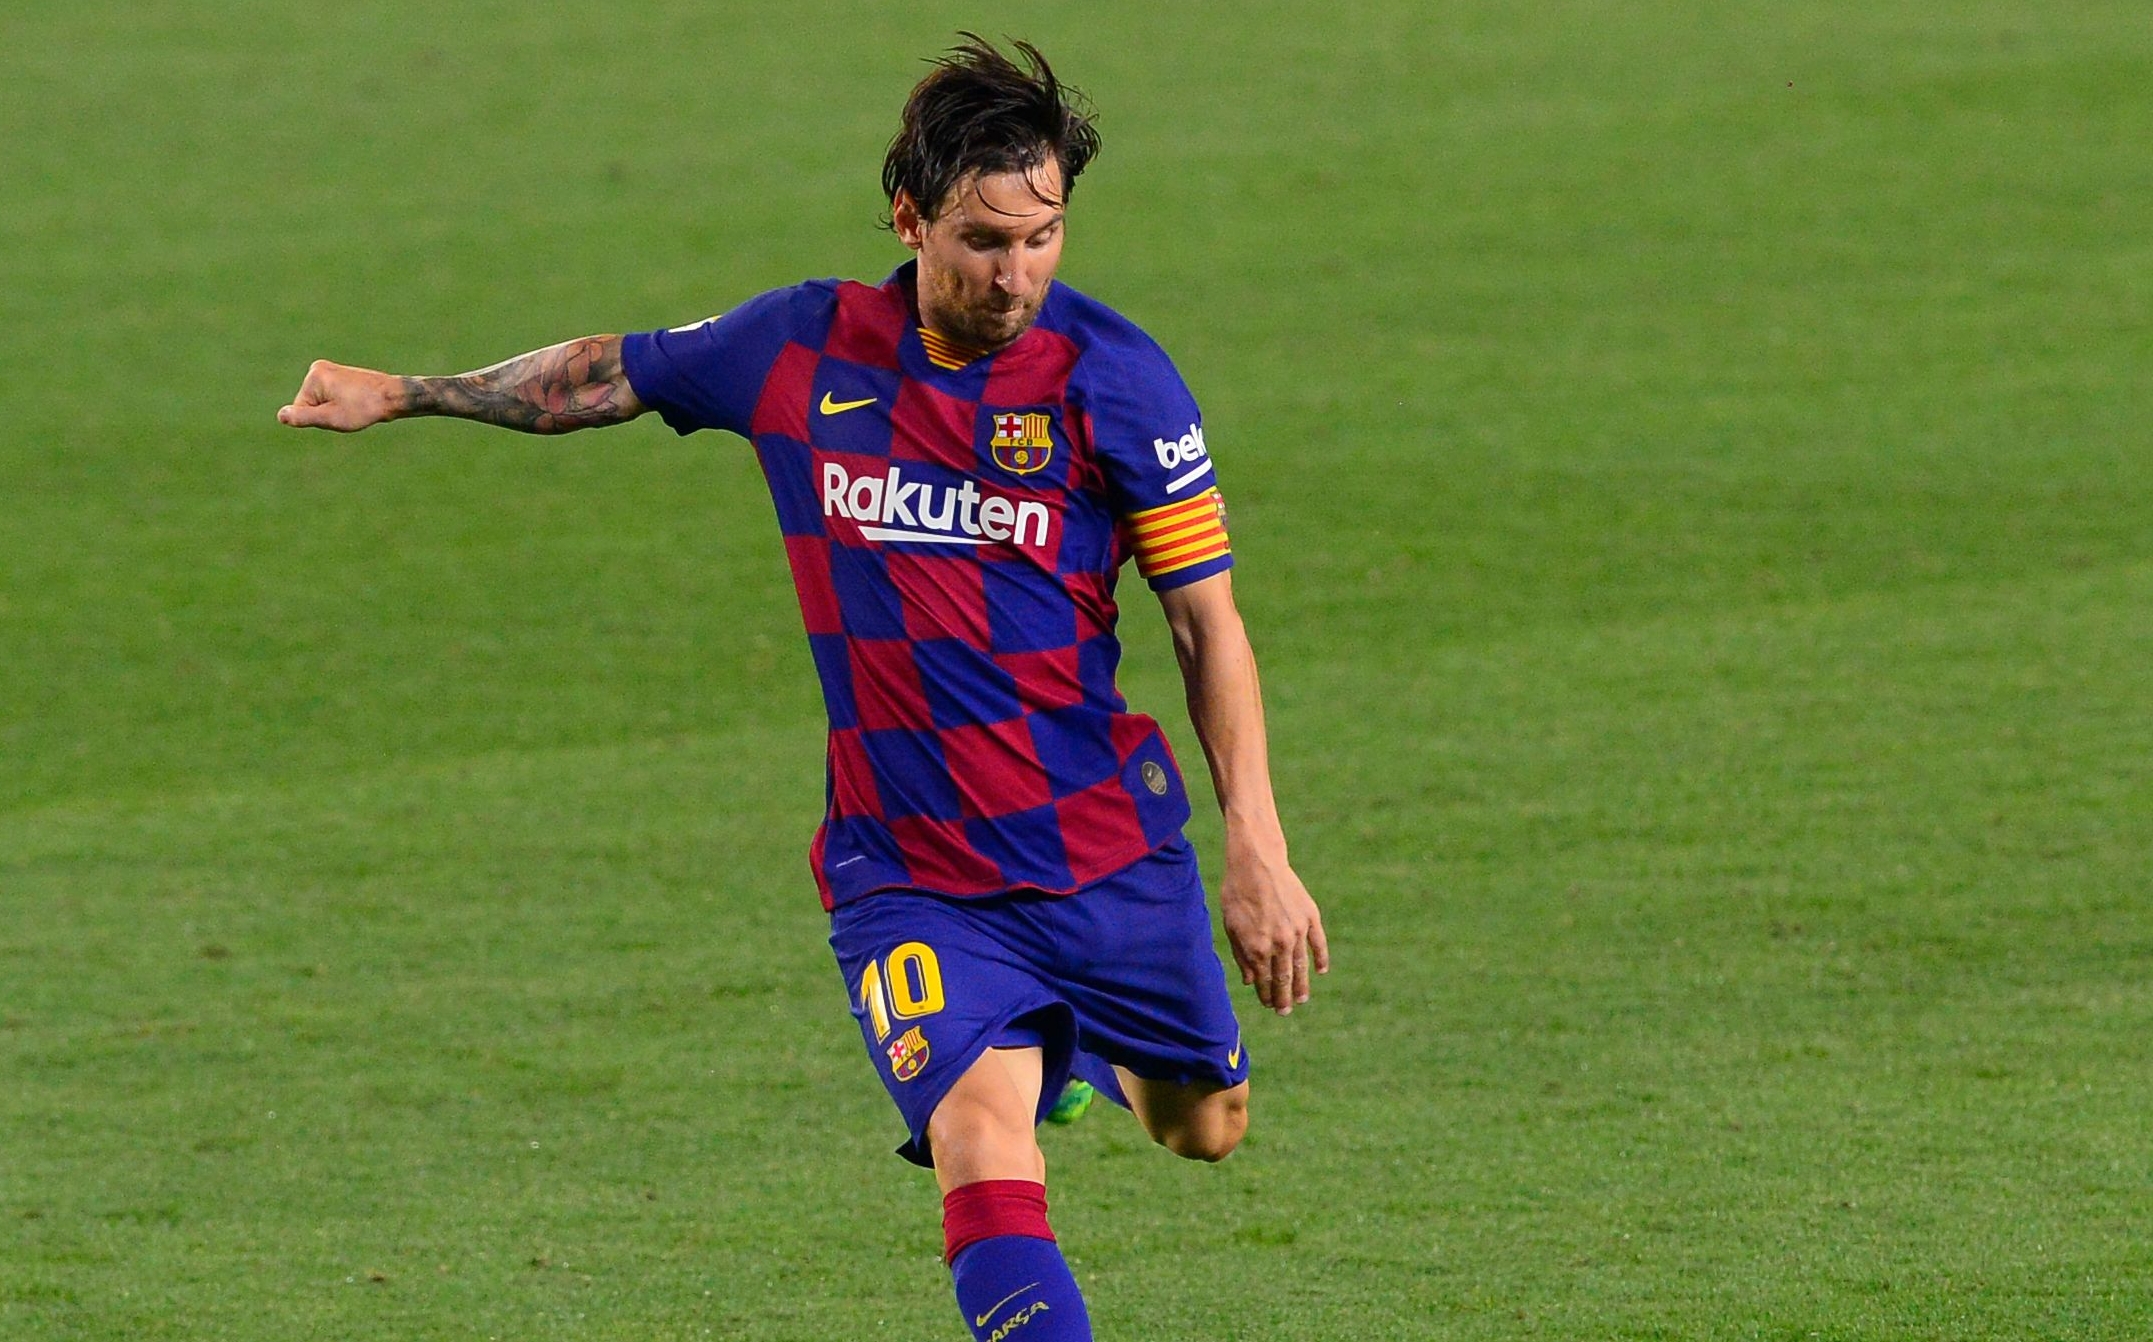 Lionel Messi jugando para el Barcelona en junio de 2020. Foto Prensa Libre (AFP)